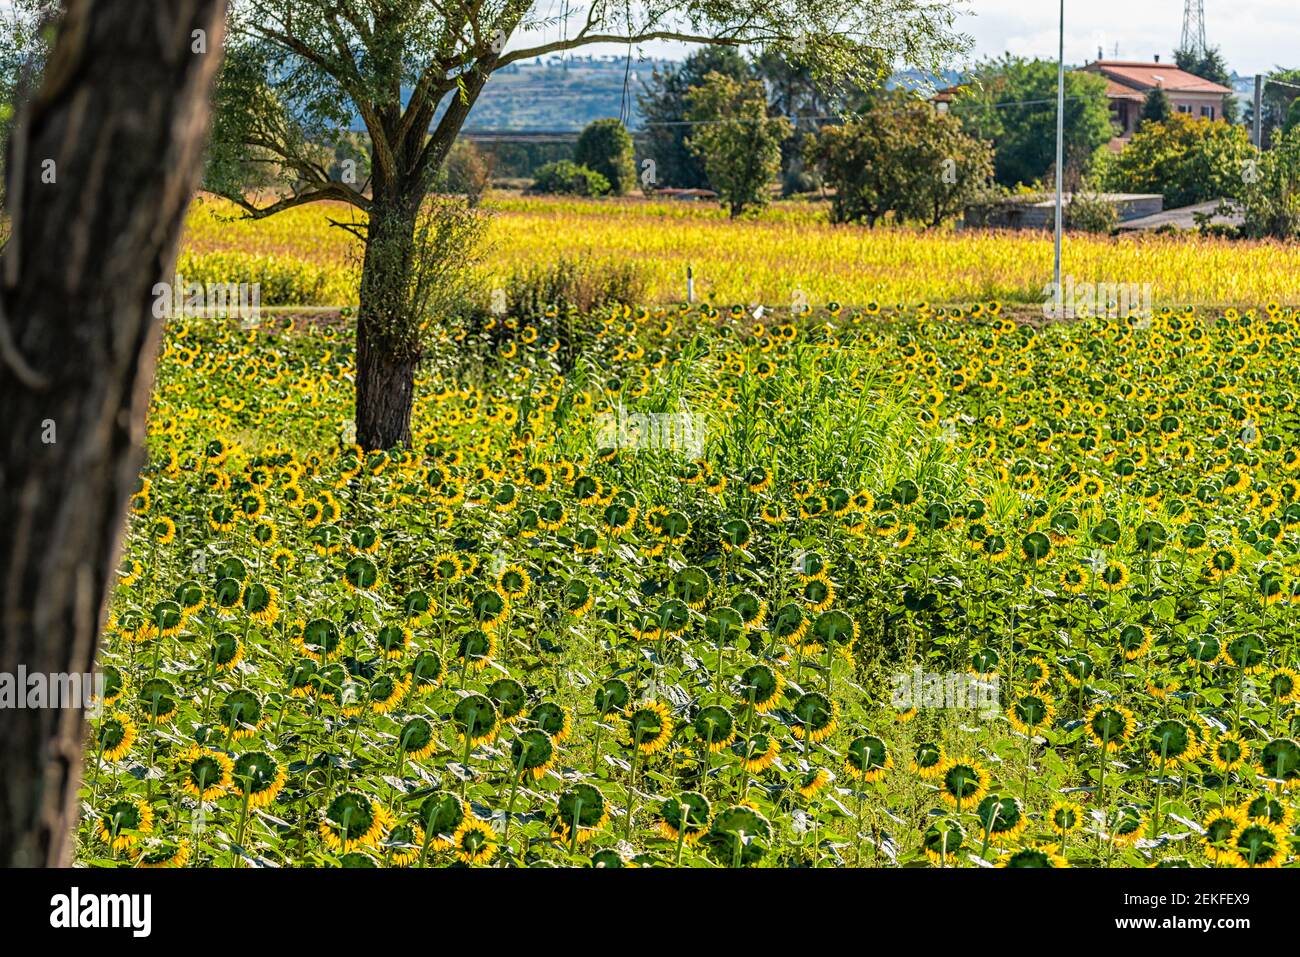 Umbrien oder Toskana, Italien Landschaft mit Bauernhof von vielen gelben und grünen Sonnenblumen Blumen Garten im Dorf im Sommer und Bäume Stockfoto